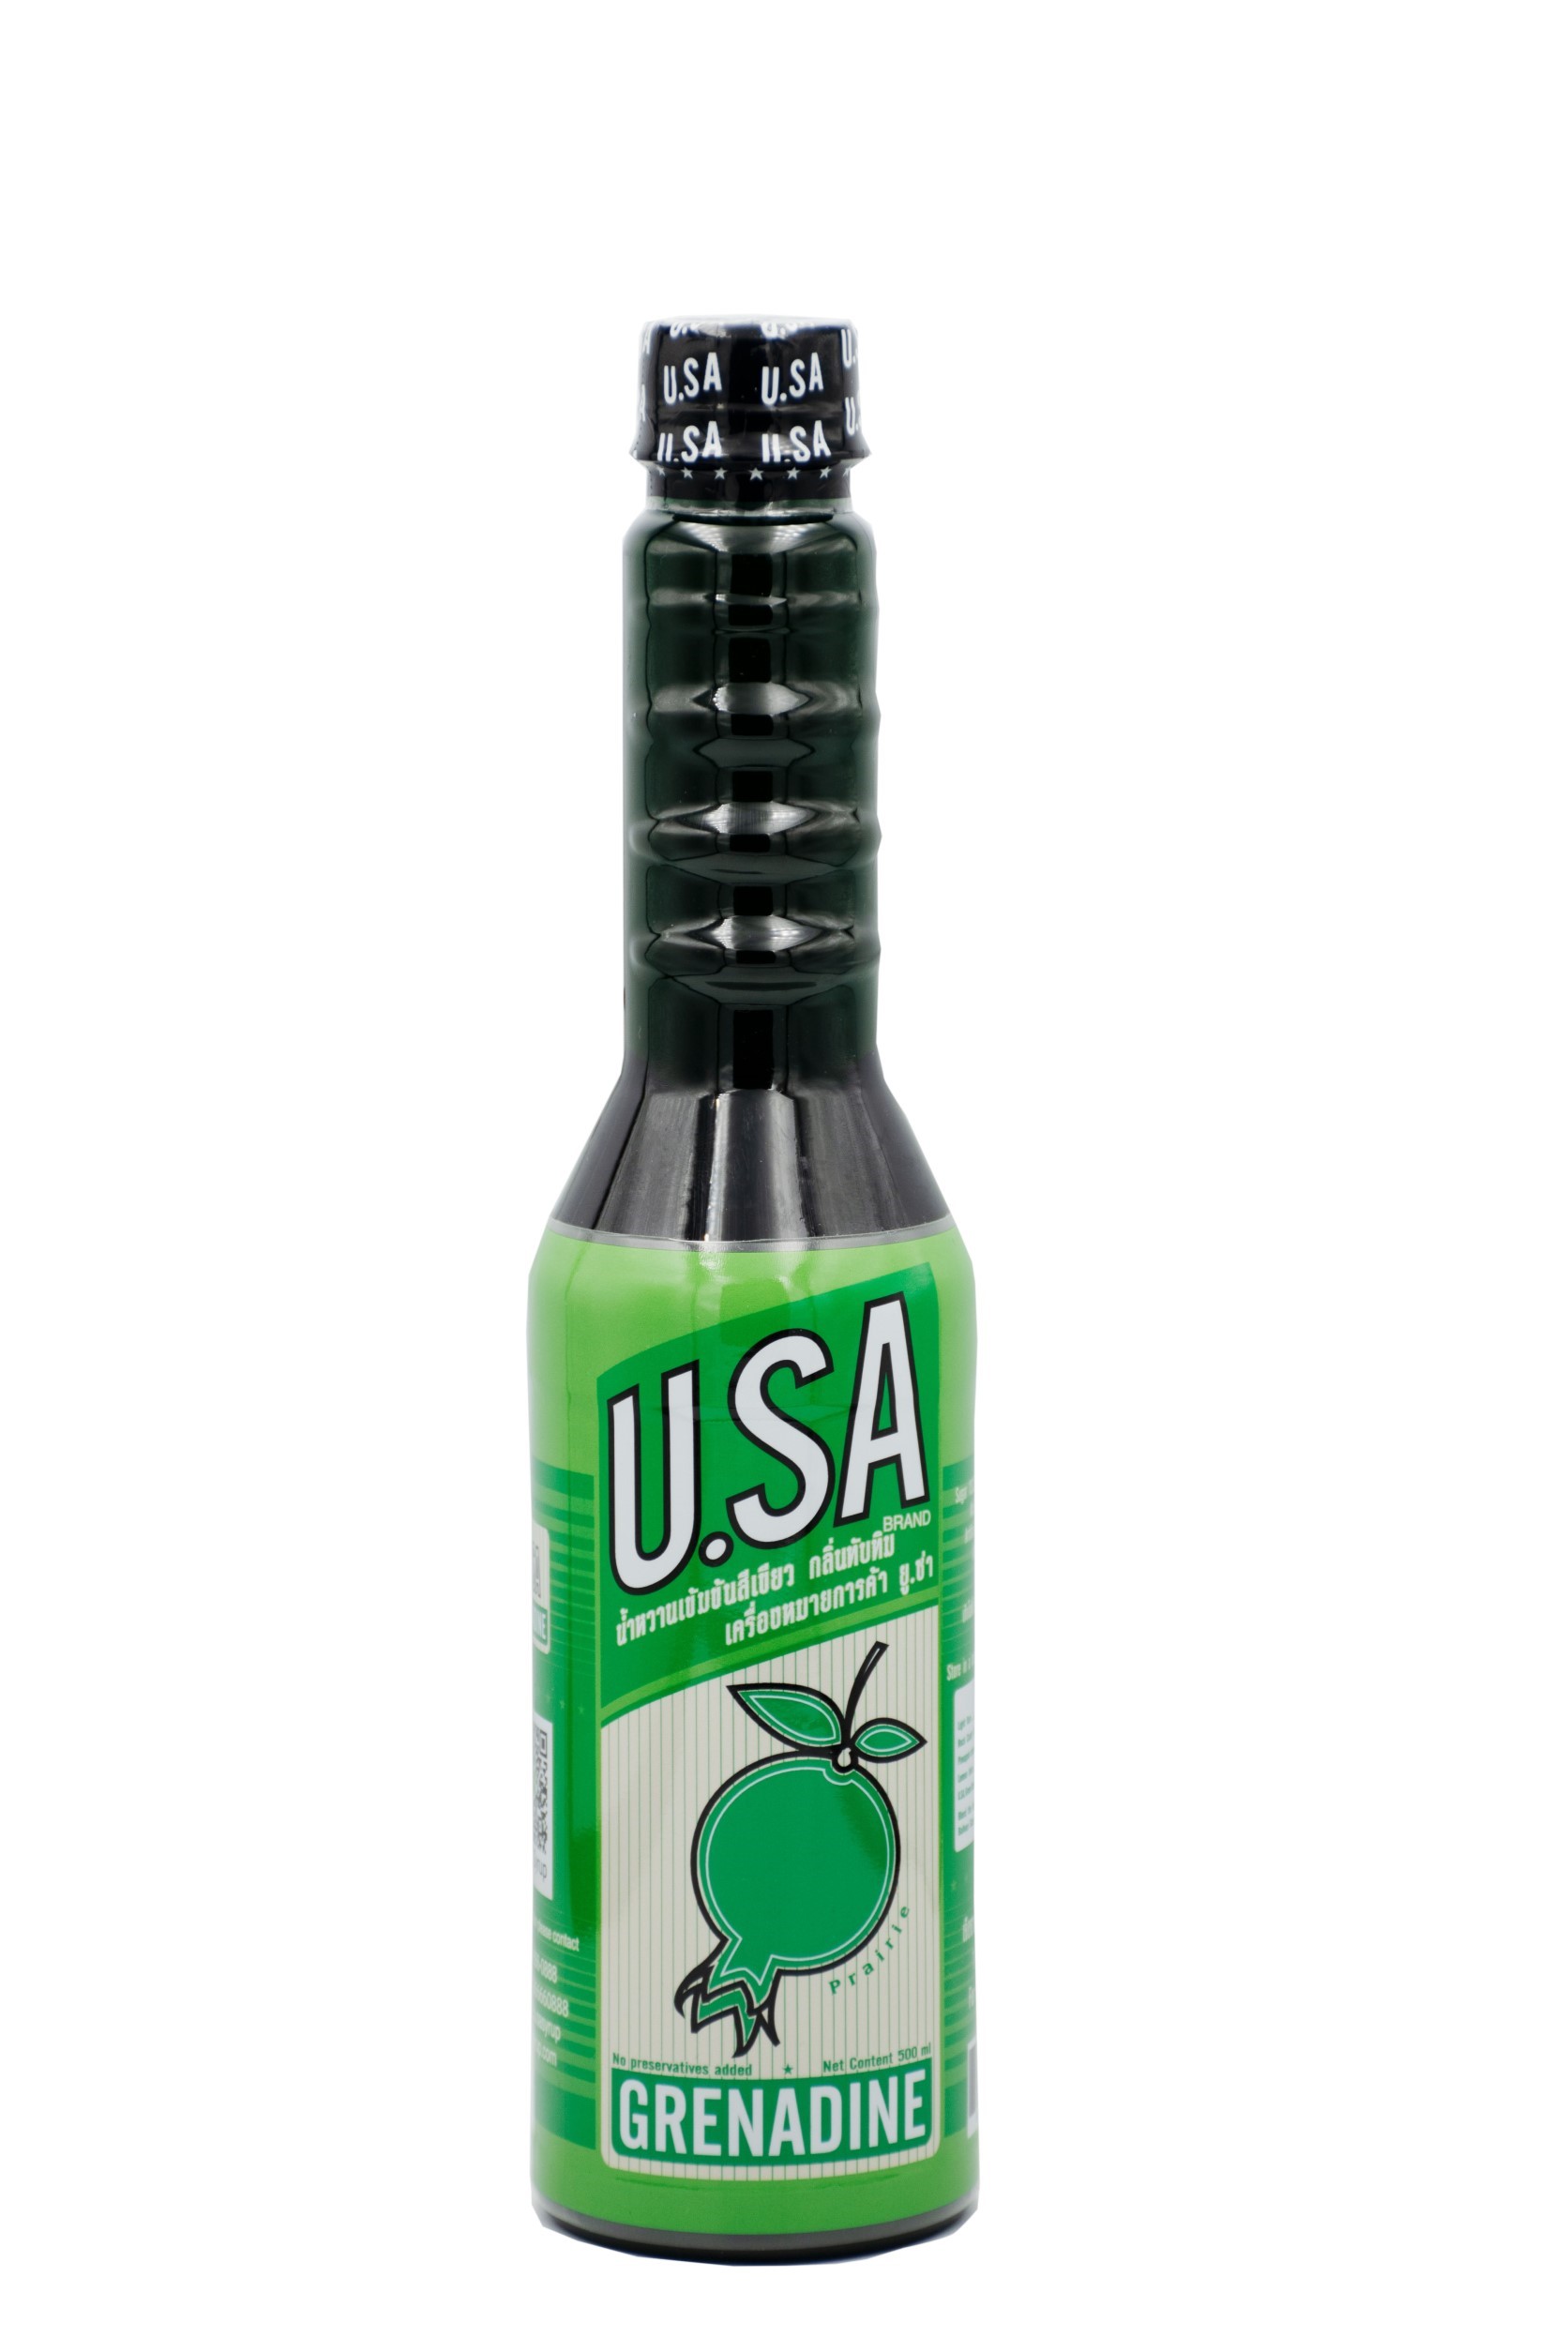 ไซรัปกลิ่นทับทิม น้ำเชื่อมกลิ่นทับทิม สีเขียว ตรายูซ่า Grenadine Pairy Syrup (U.SA brand)